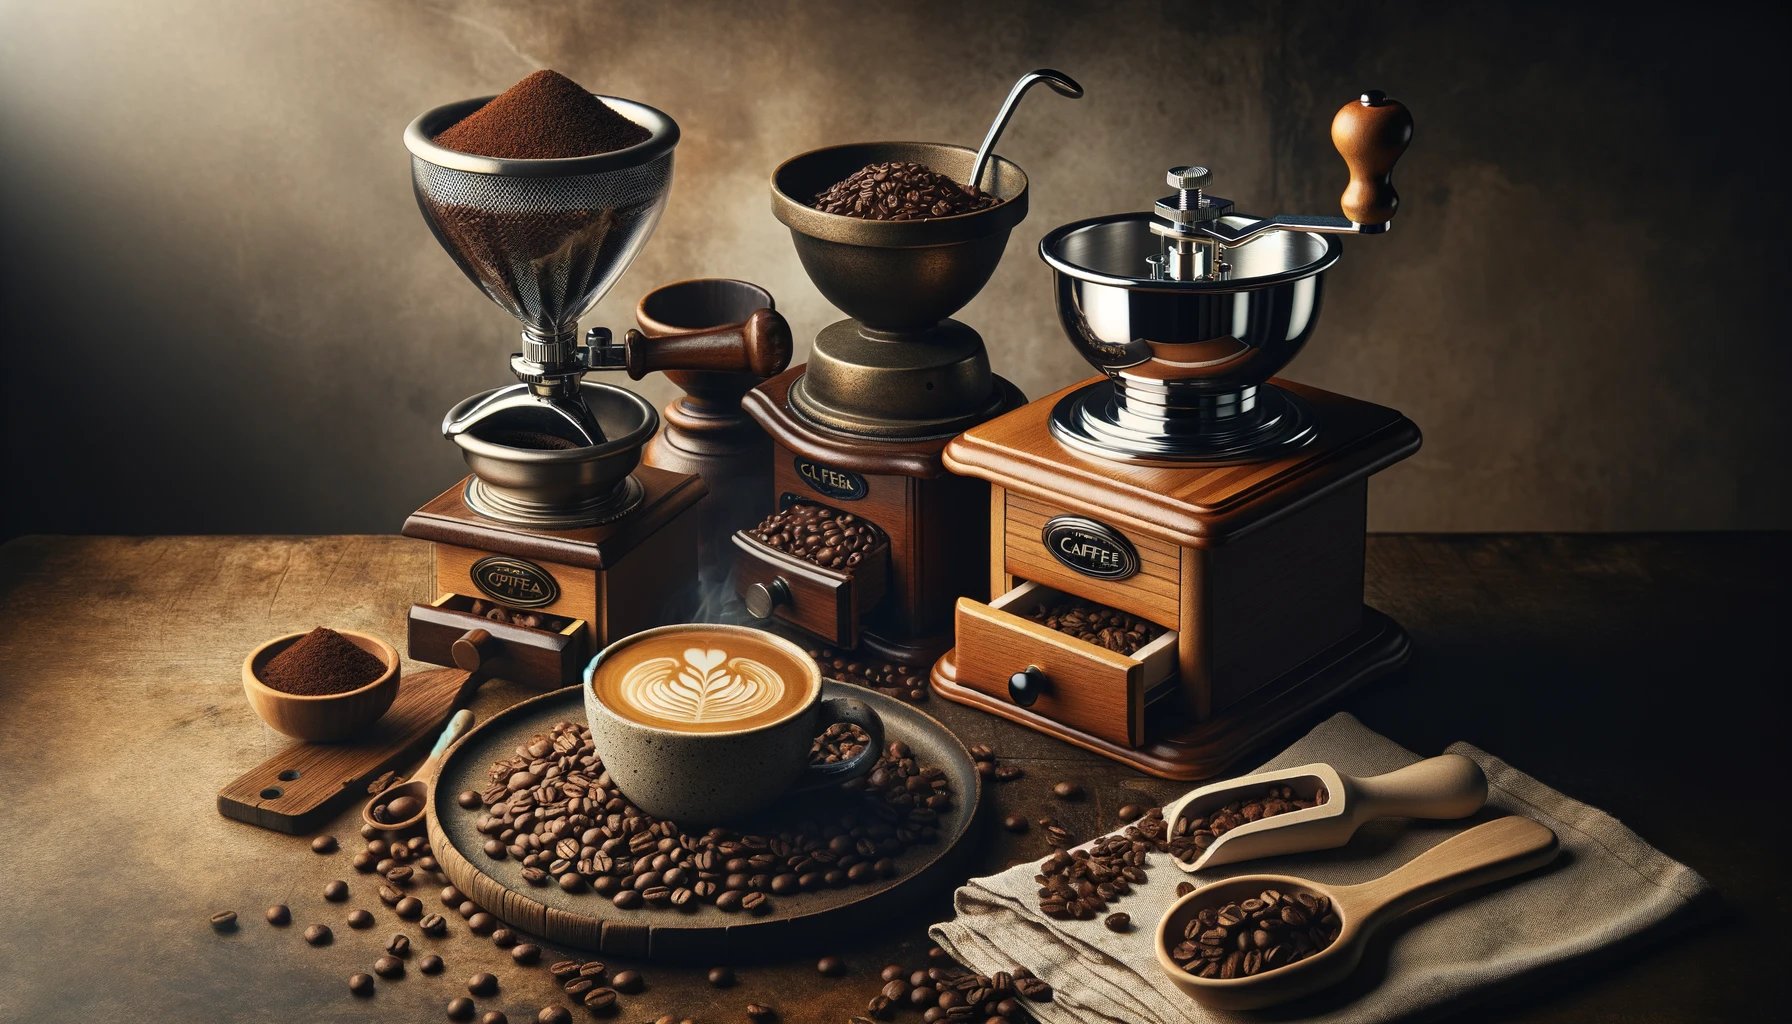 proceso artesanal de preparación de café